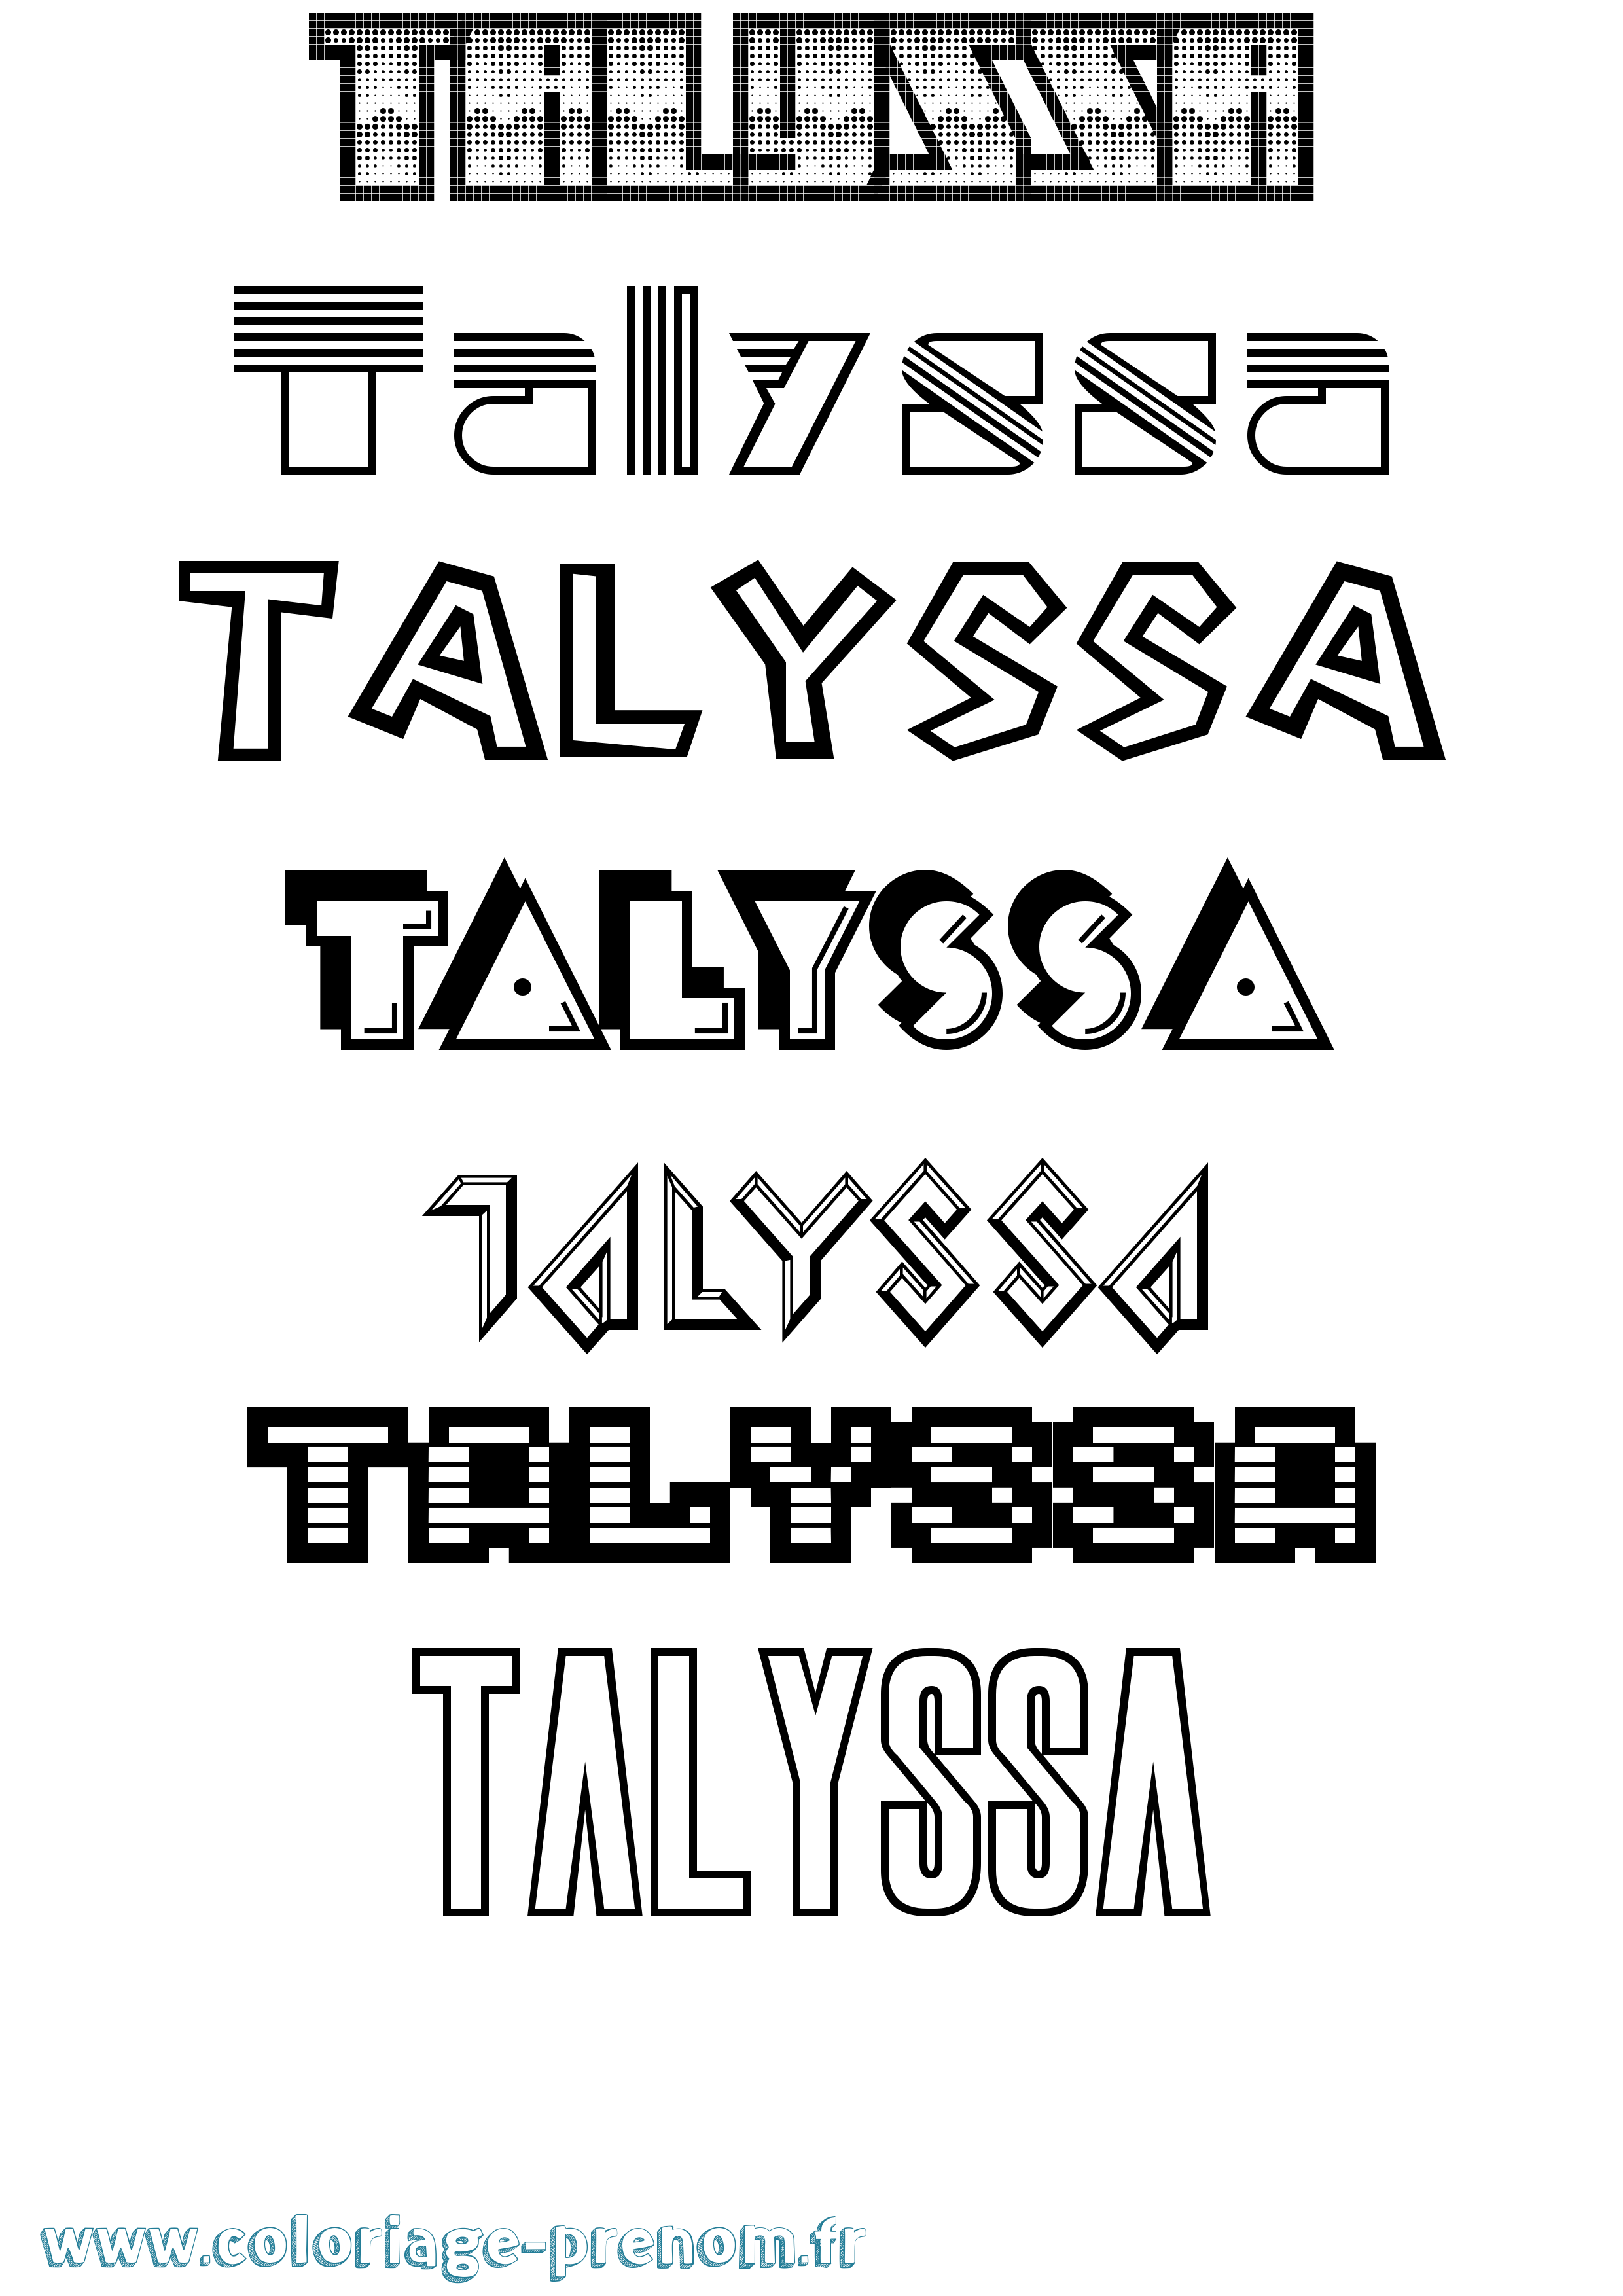 Coloriage prénom Talyssa Jeux Vidéos